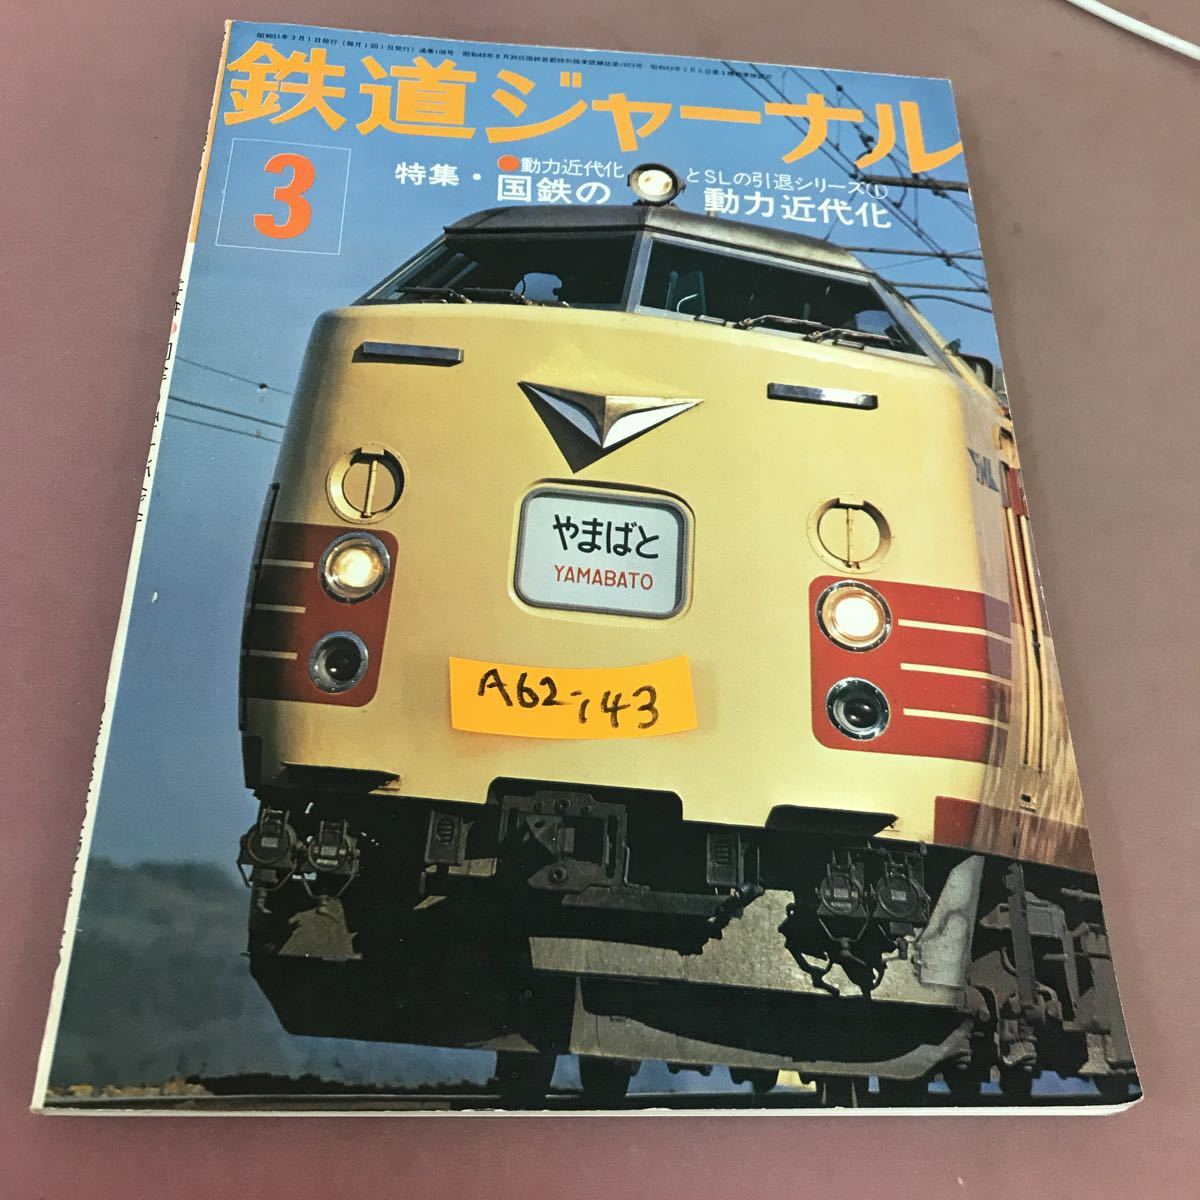 2022新発 鉄道ジャーナル A62-143 76.3 昭和51年3月1日発行 No.108